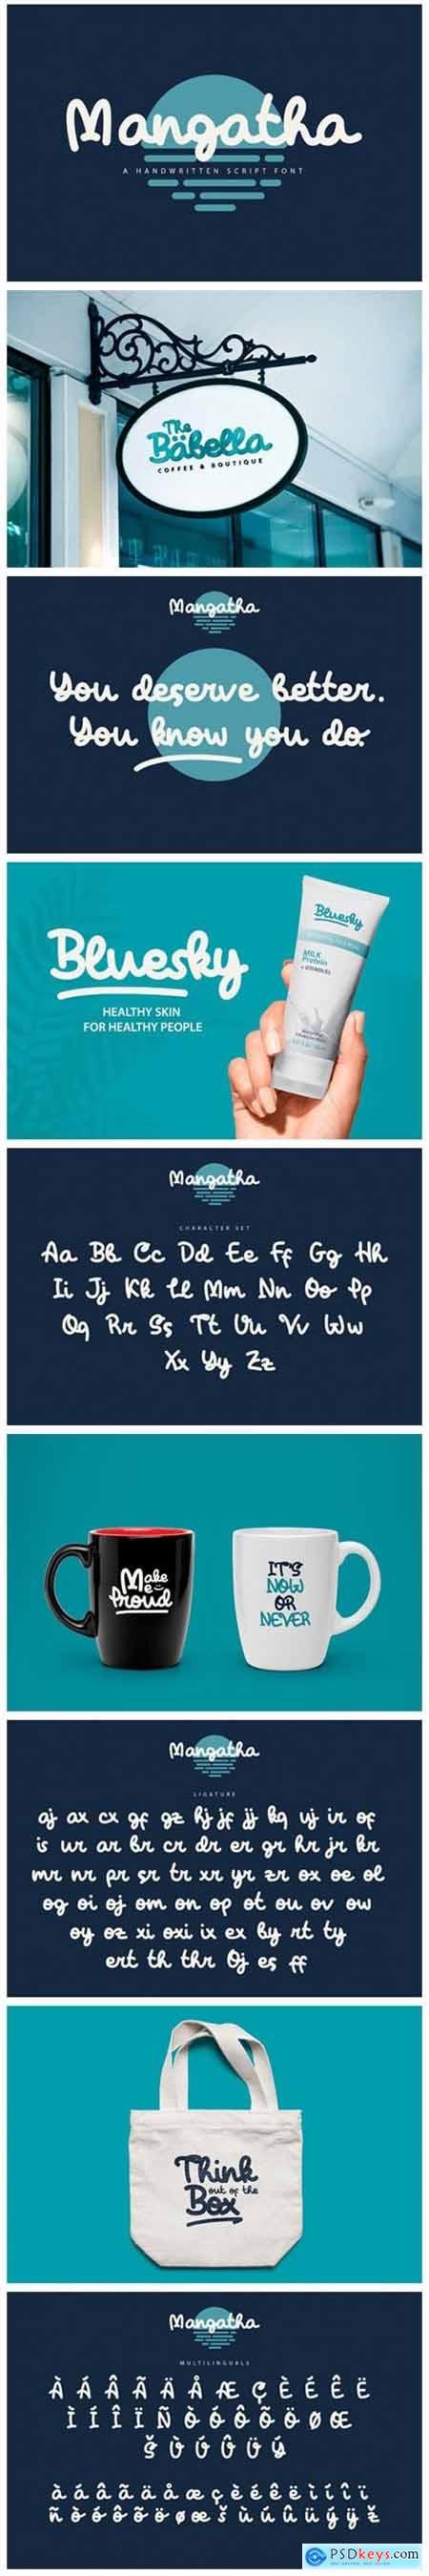 Mangatha Font